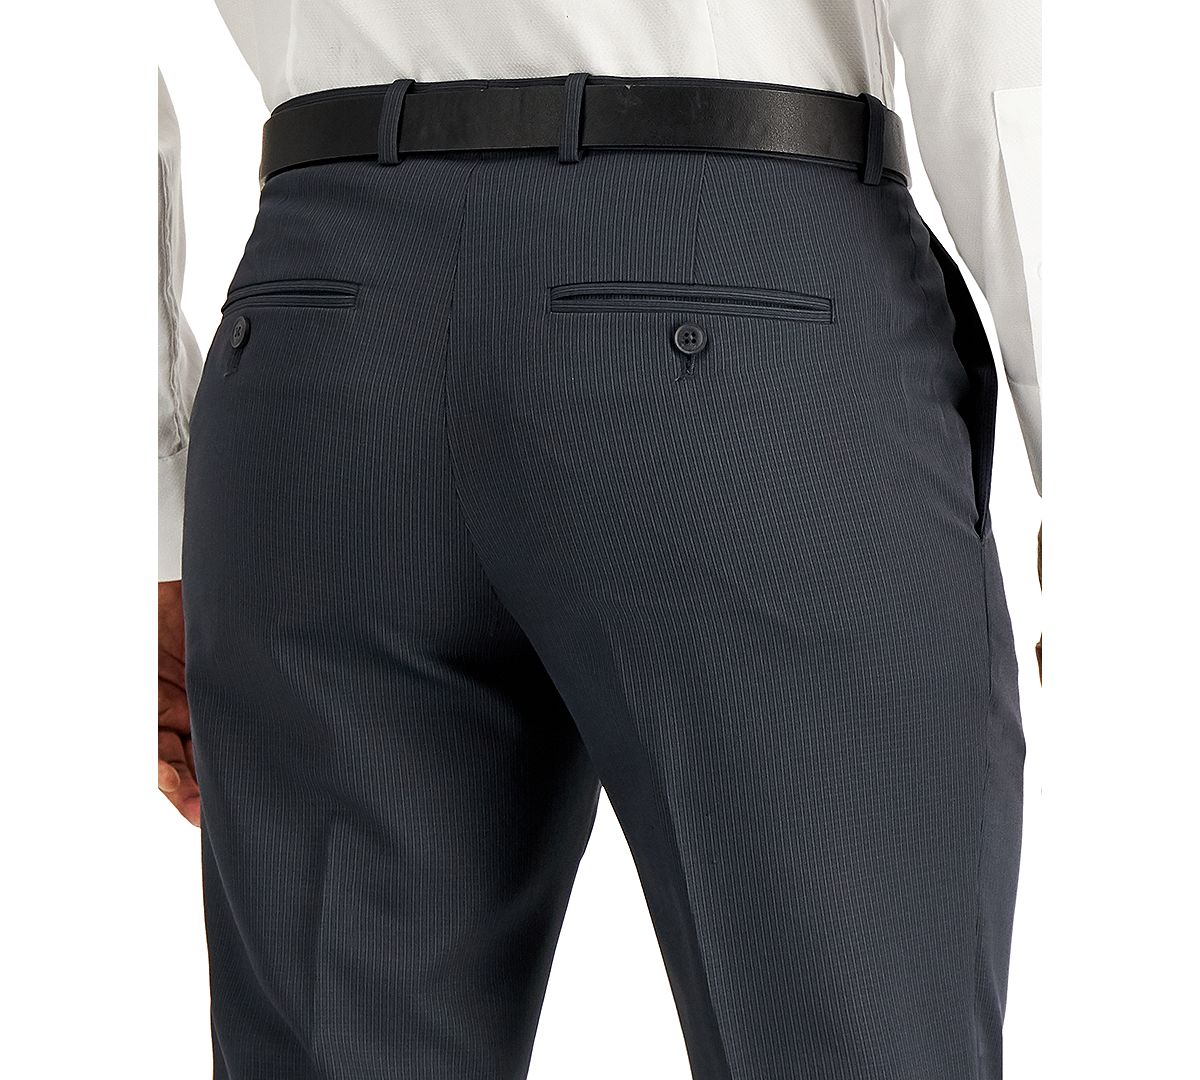 Perry Ellis Portfolio Modern-fit Subtle Check Performance Dress Pants Charcoal